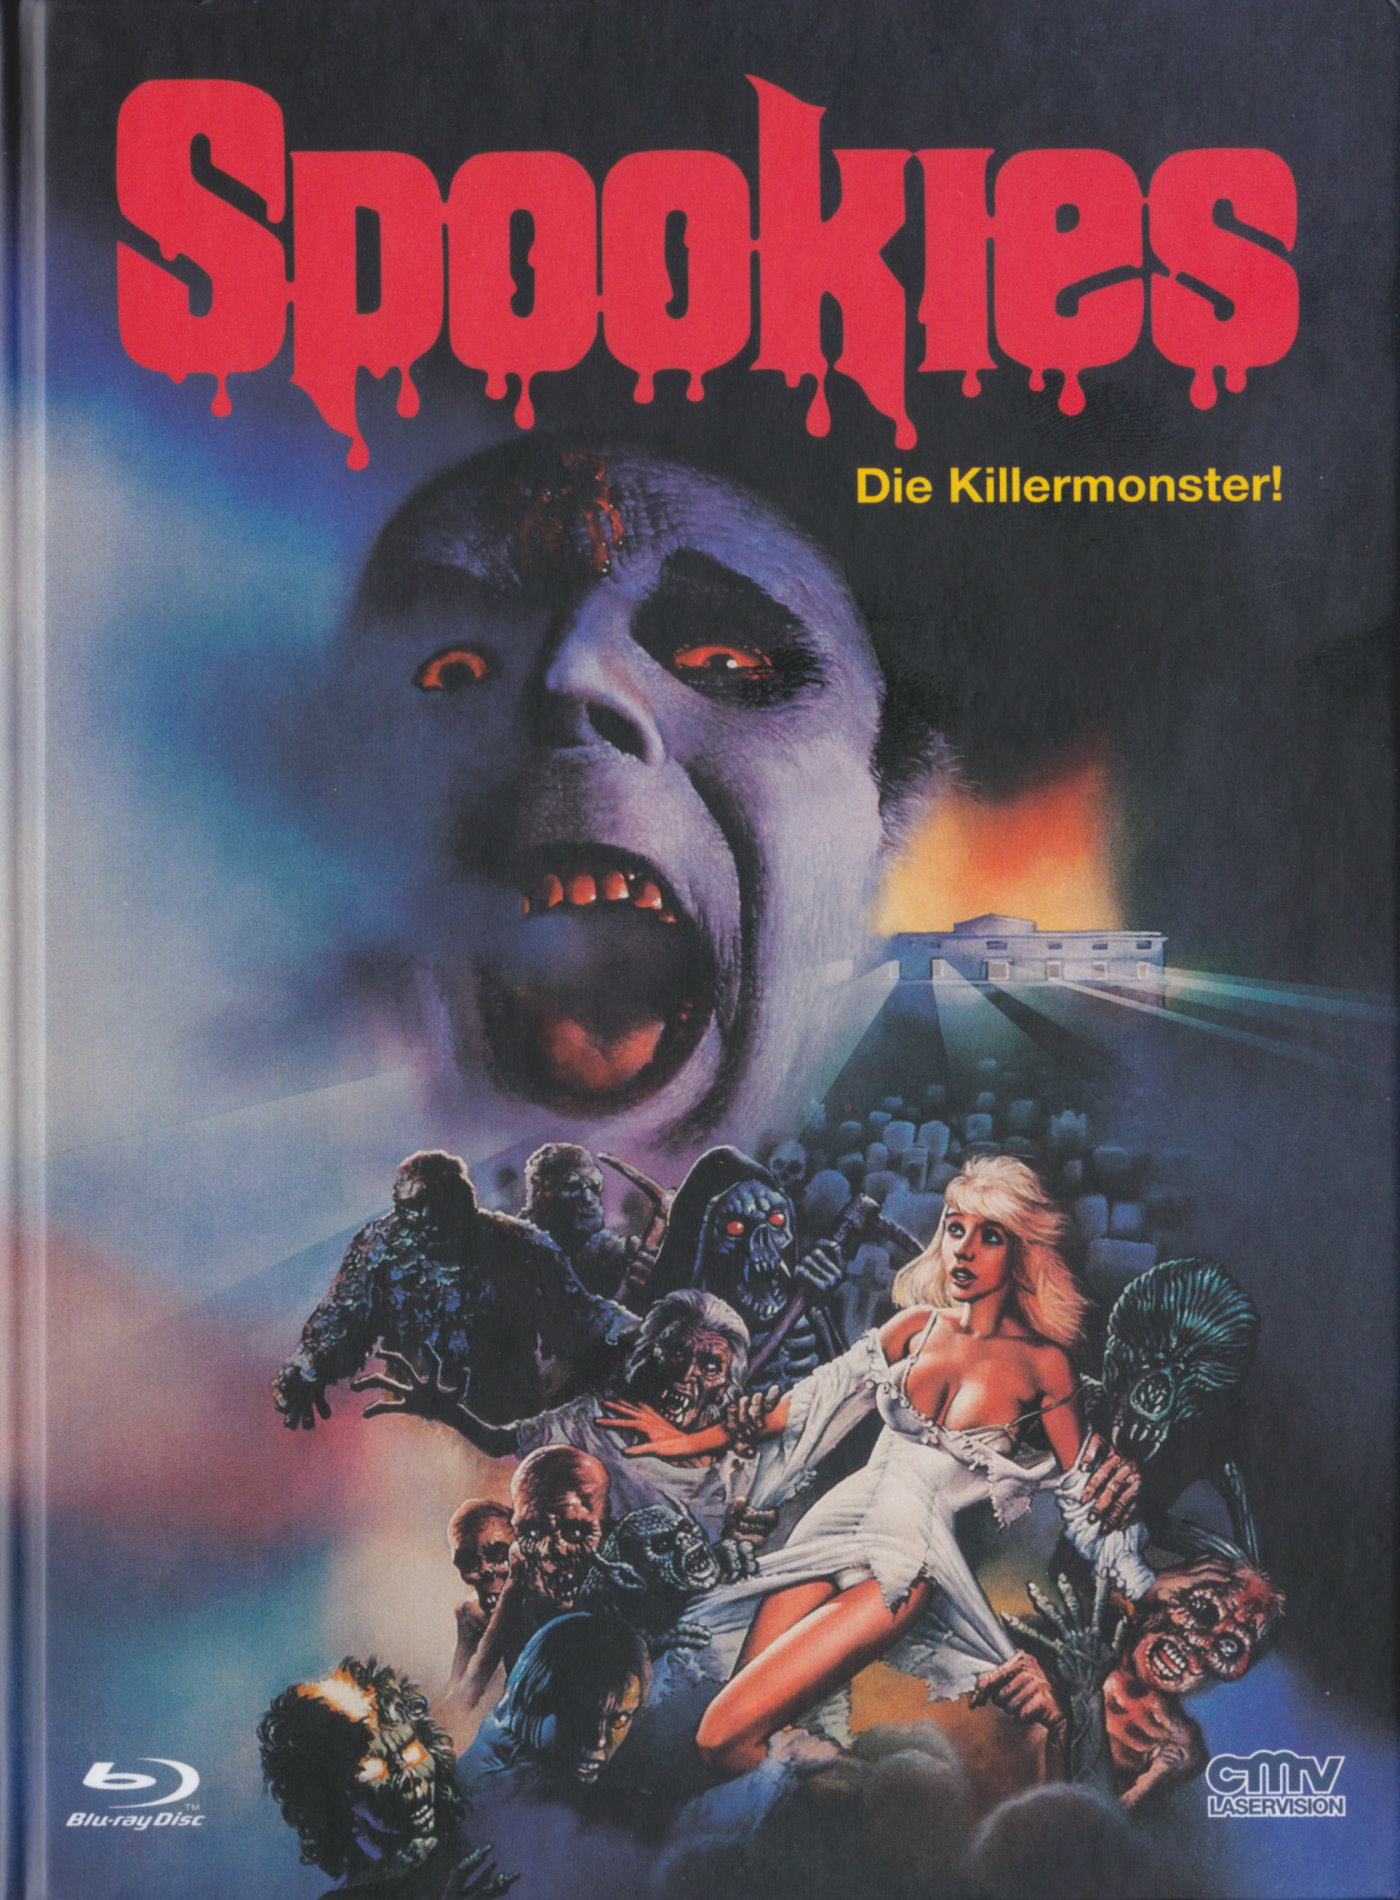 Cover - Spookies - Die Killermonster.jpg